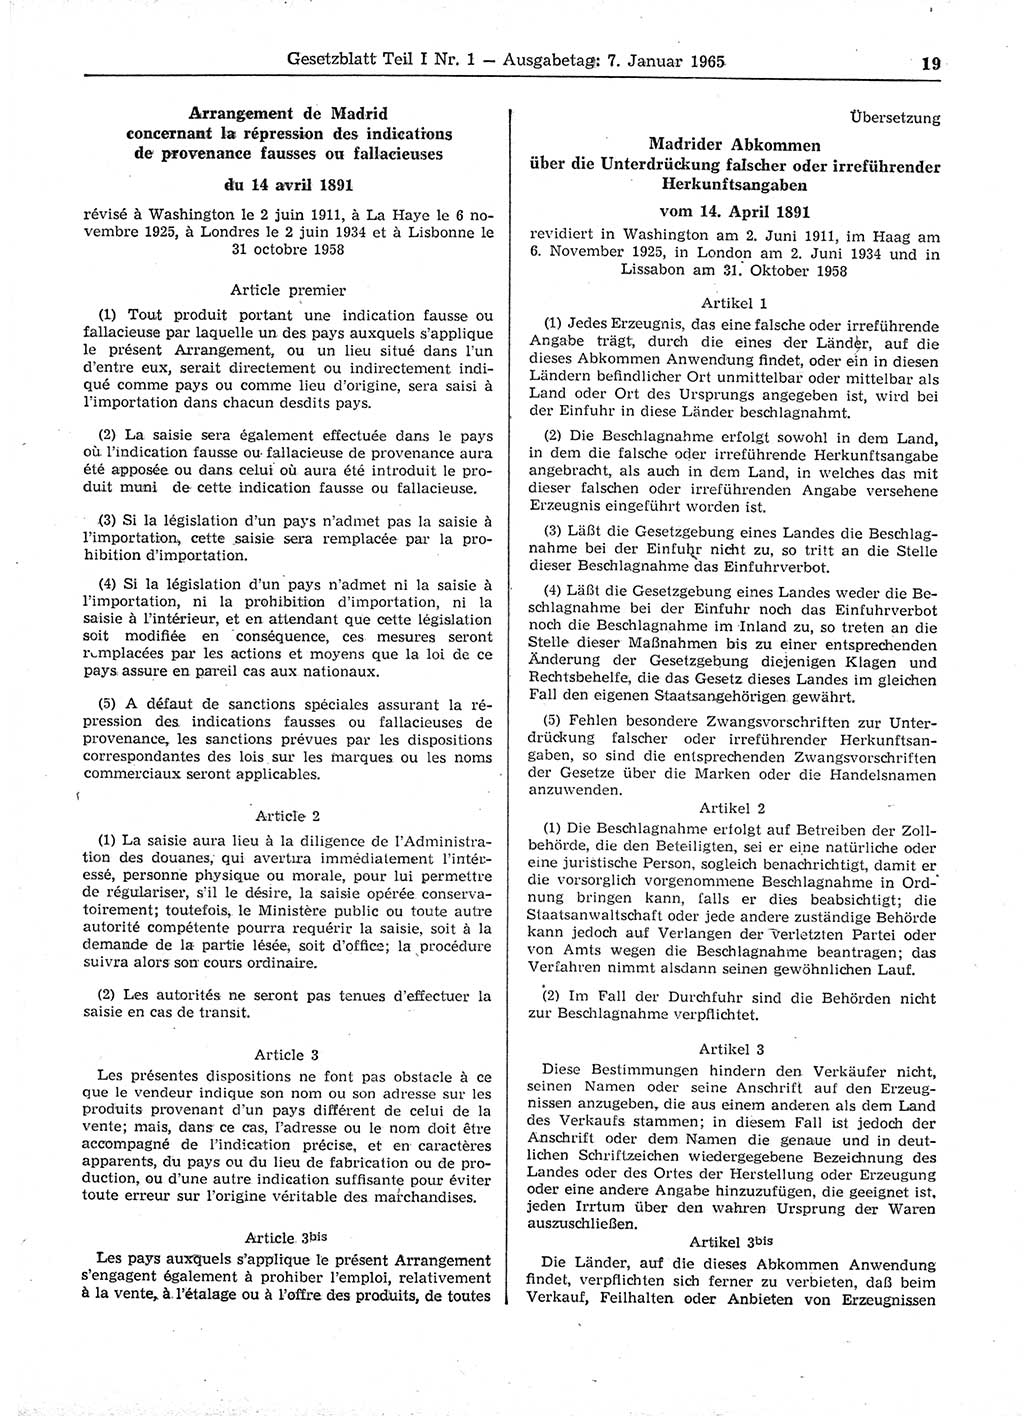 Gesetzblatt (GBl.) der Deutschen Demokratischen Republik (DDR) Teil Ⅰ 1965, Seite 19 (GBl. DDR Ⅰ 1965, S. 19)